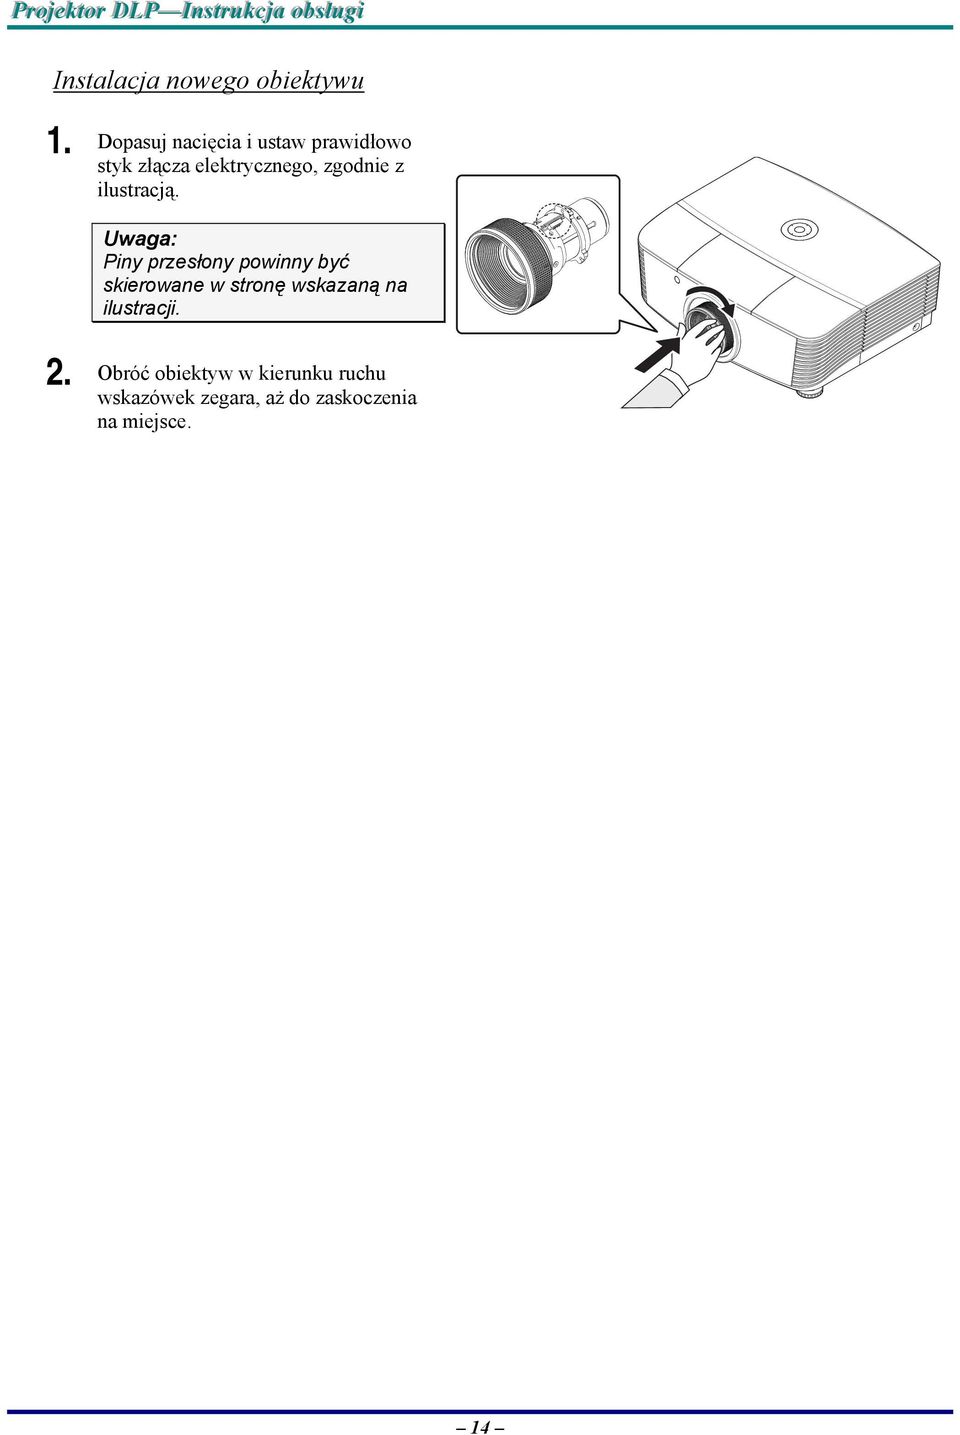 Dopasuj nacięcia i ustaw prawidłowo styk złącza elektrycznego, zgodnie z ilustracją.